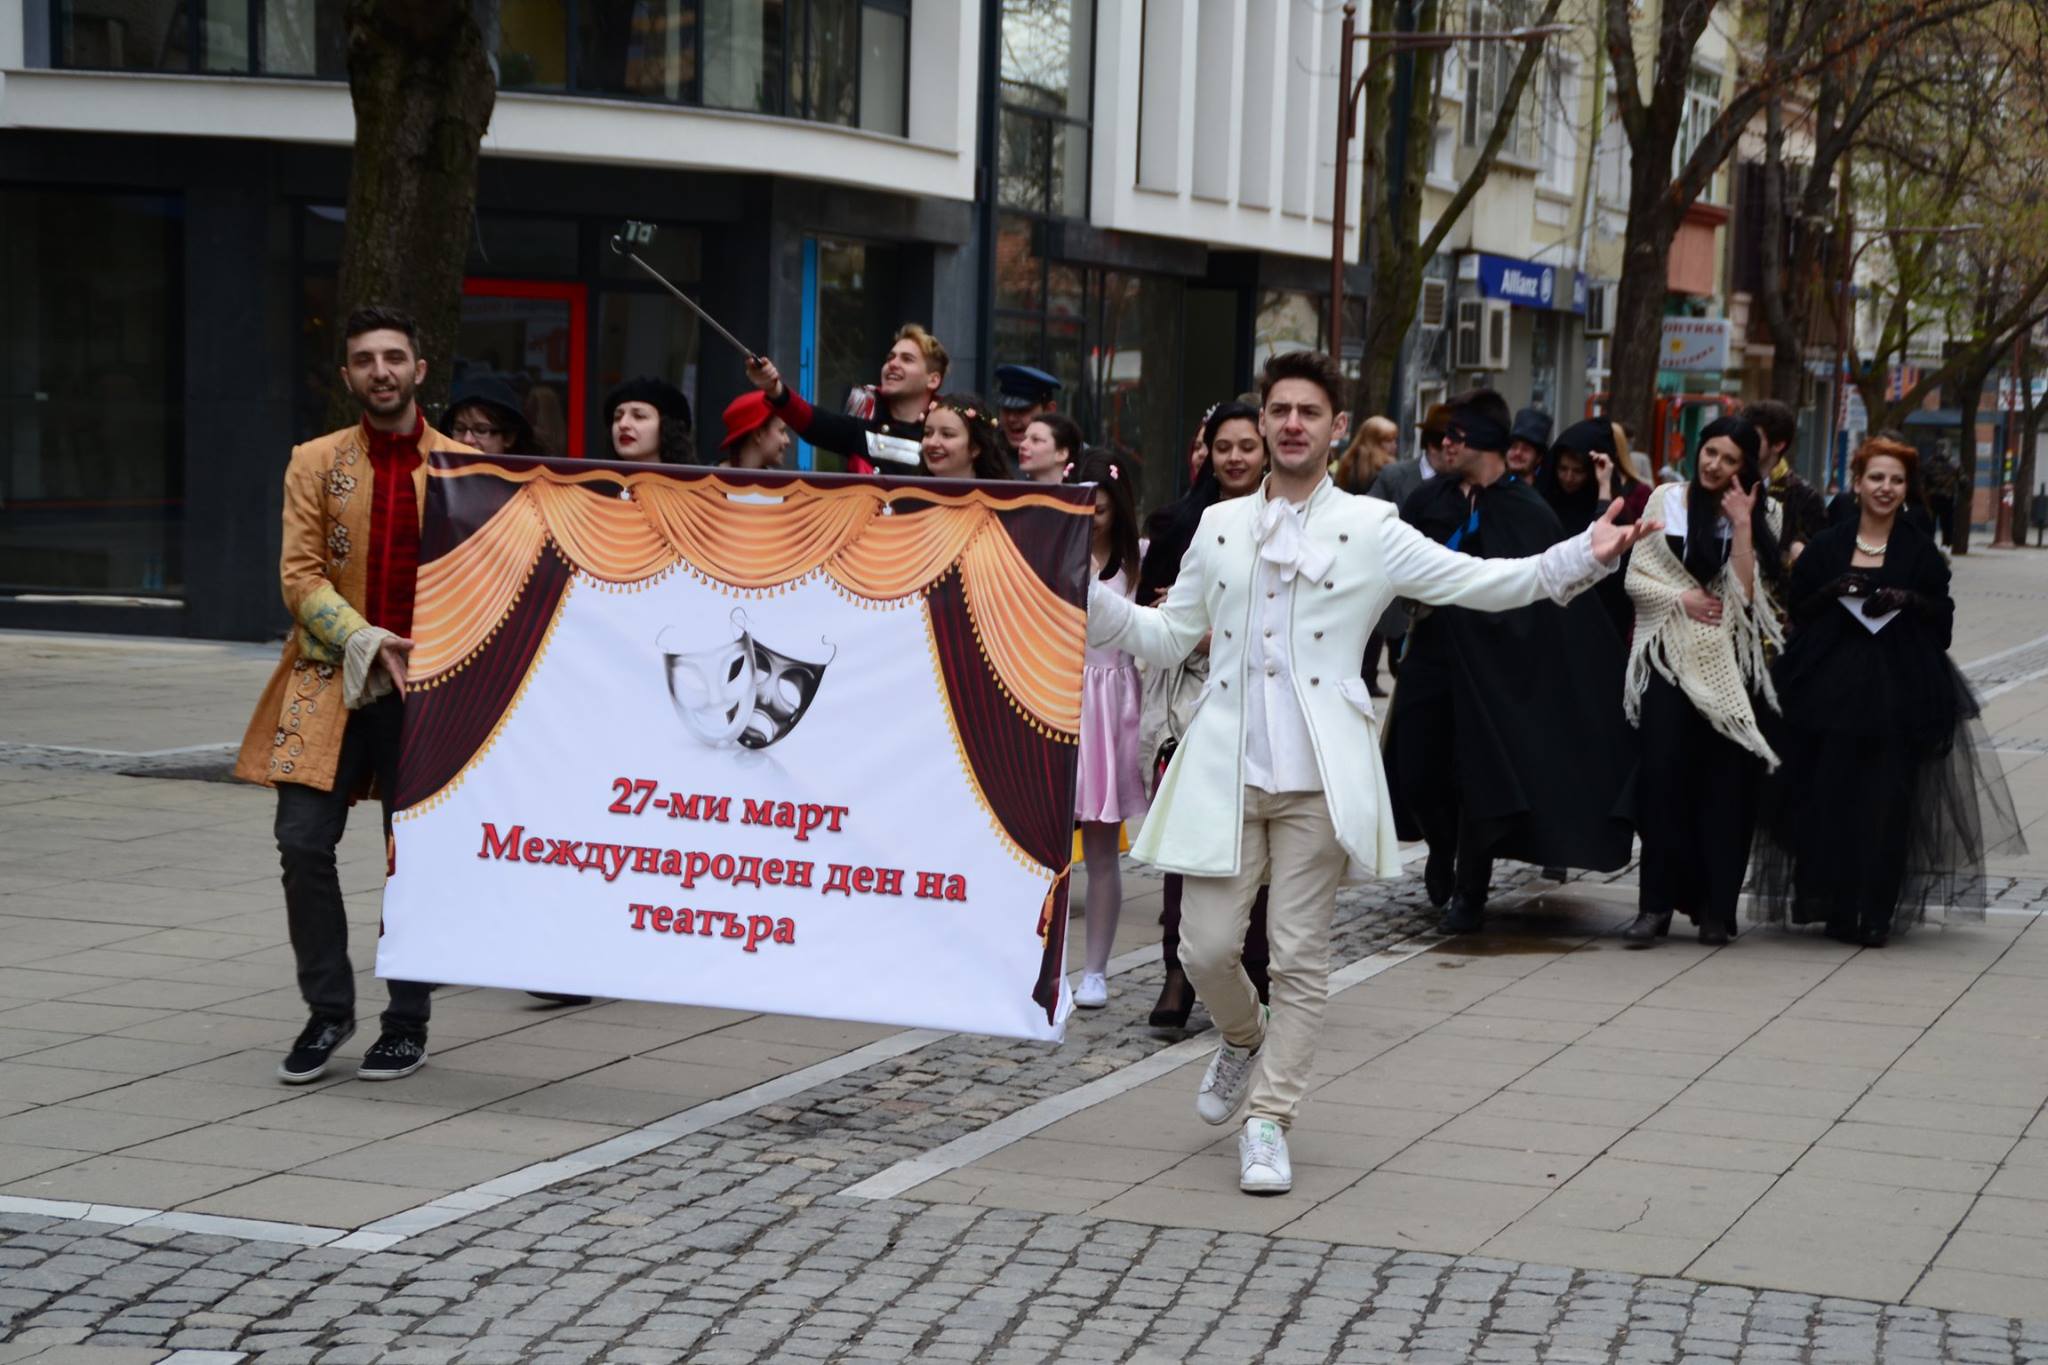 Студенти и преподаватели от ЮЗУ  Неофит Рилски  ще отбележат Международния ден на театъра с празнично шествие